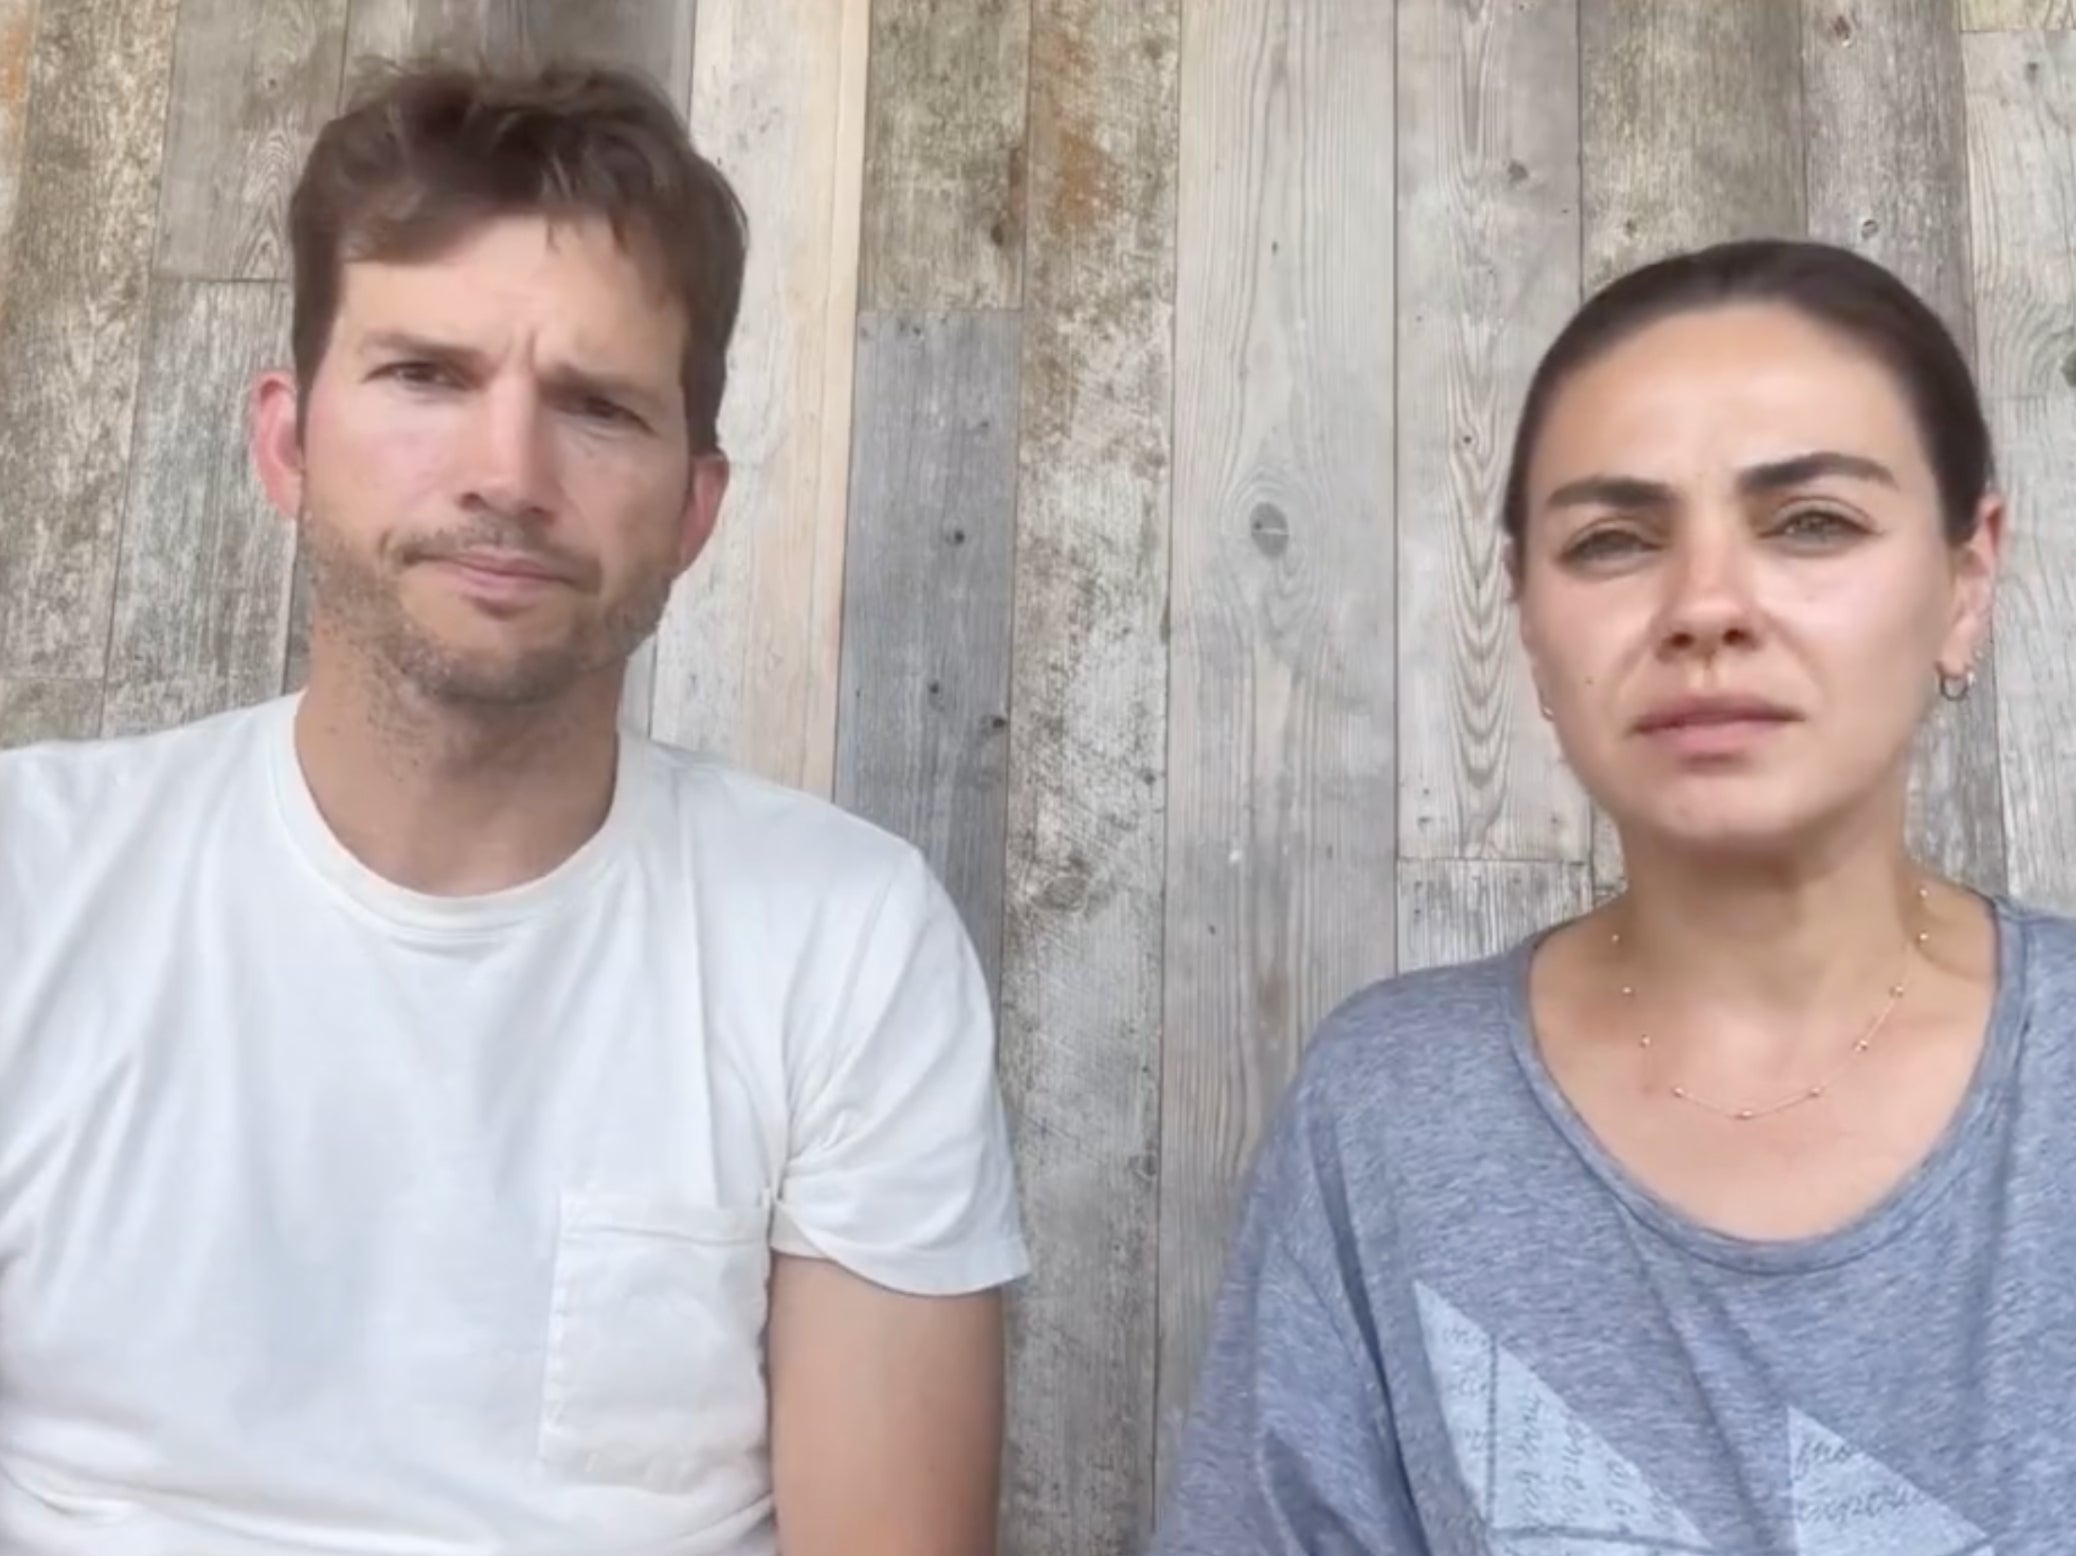 Ashton Kutcher and Mila Kunis’s apology video